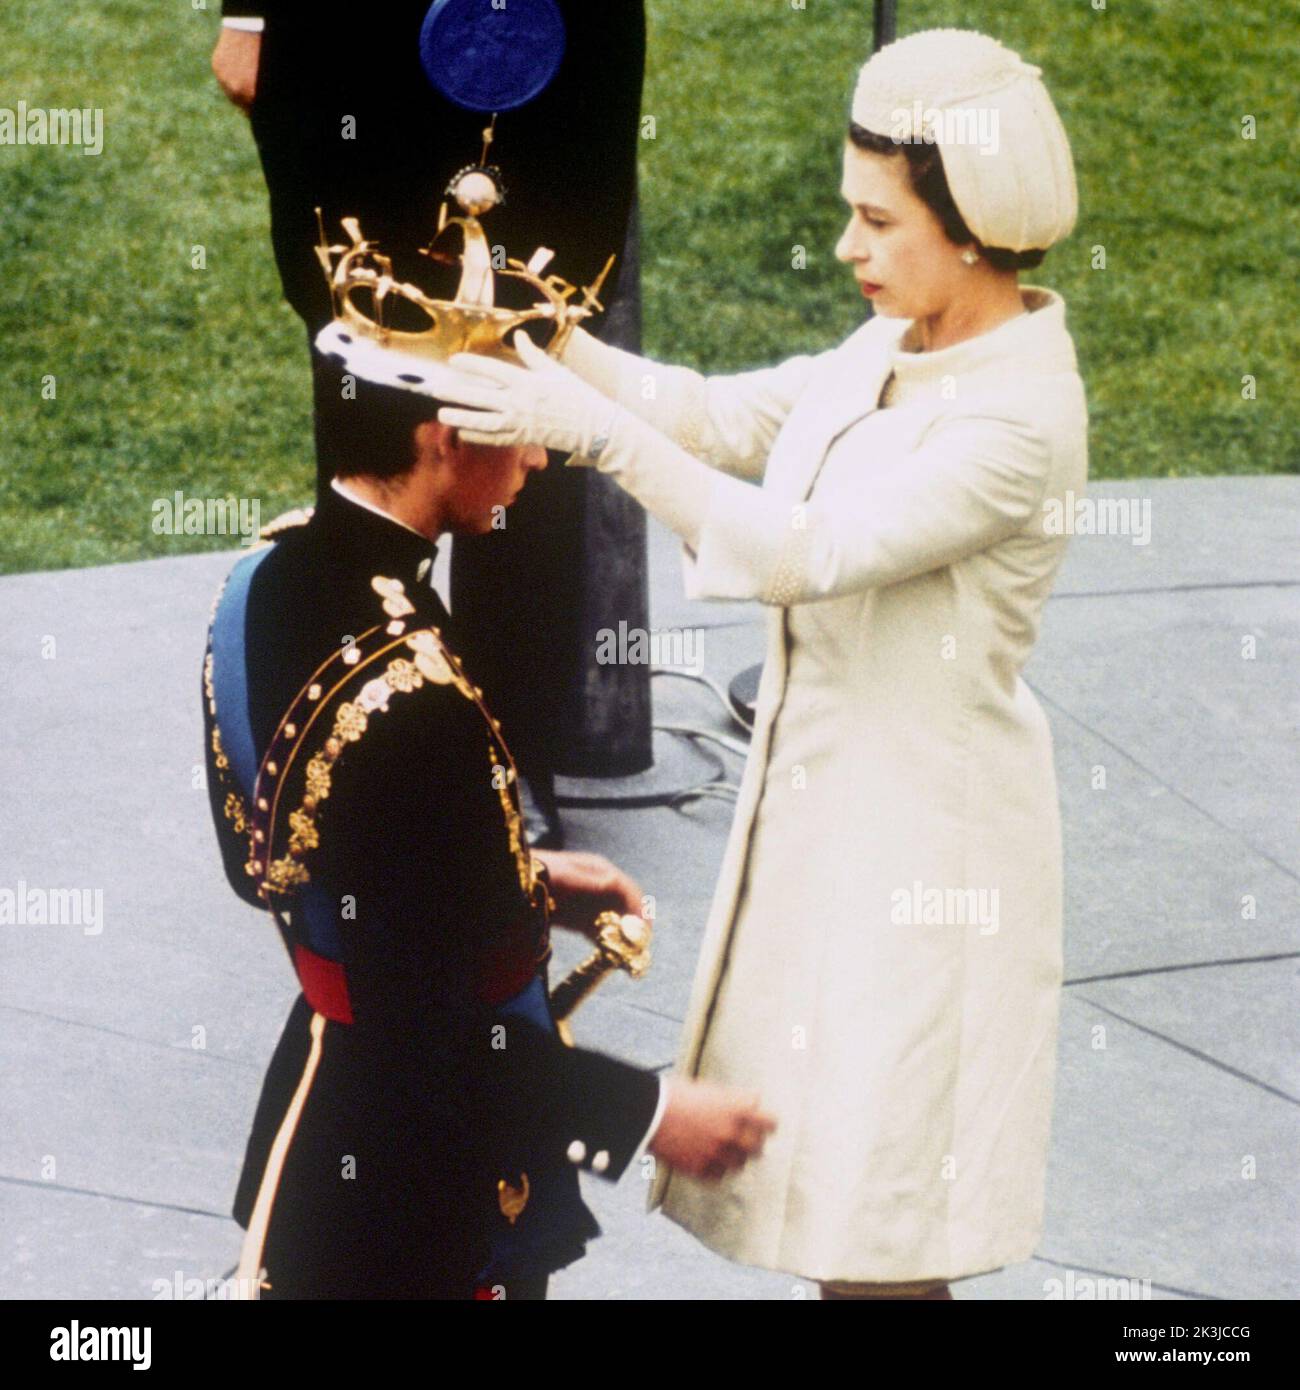 Photo du dossier datée du 01/07/69, de la reine Elizabeth II, qui investit officiellement son fils le prince Charles avec le Coronet du prince de Galles lors d'une cérémonie d'investiture au château de Caernarfon. Date de publication : mardi 27 septembre 2022. Banque D'Images